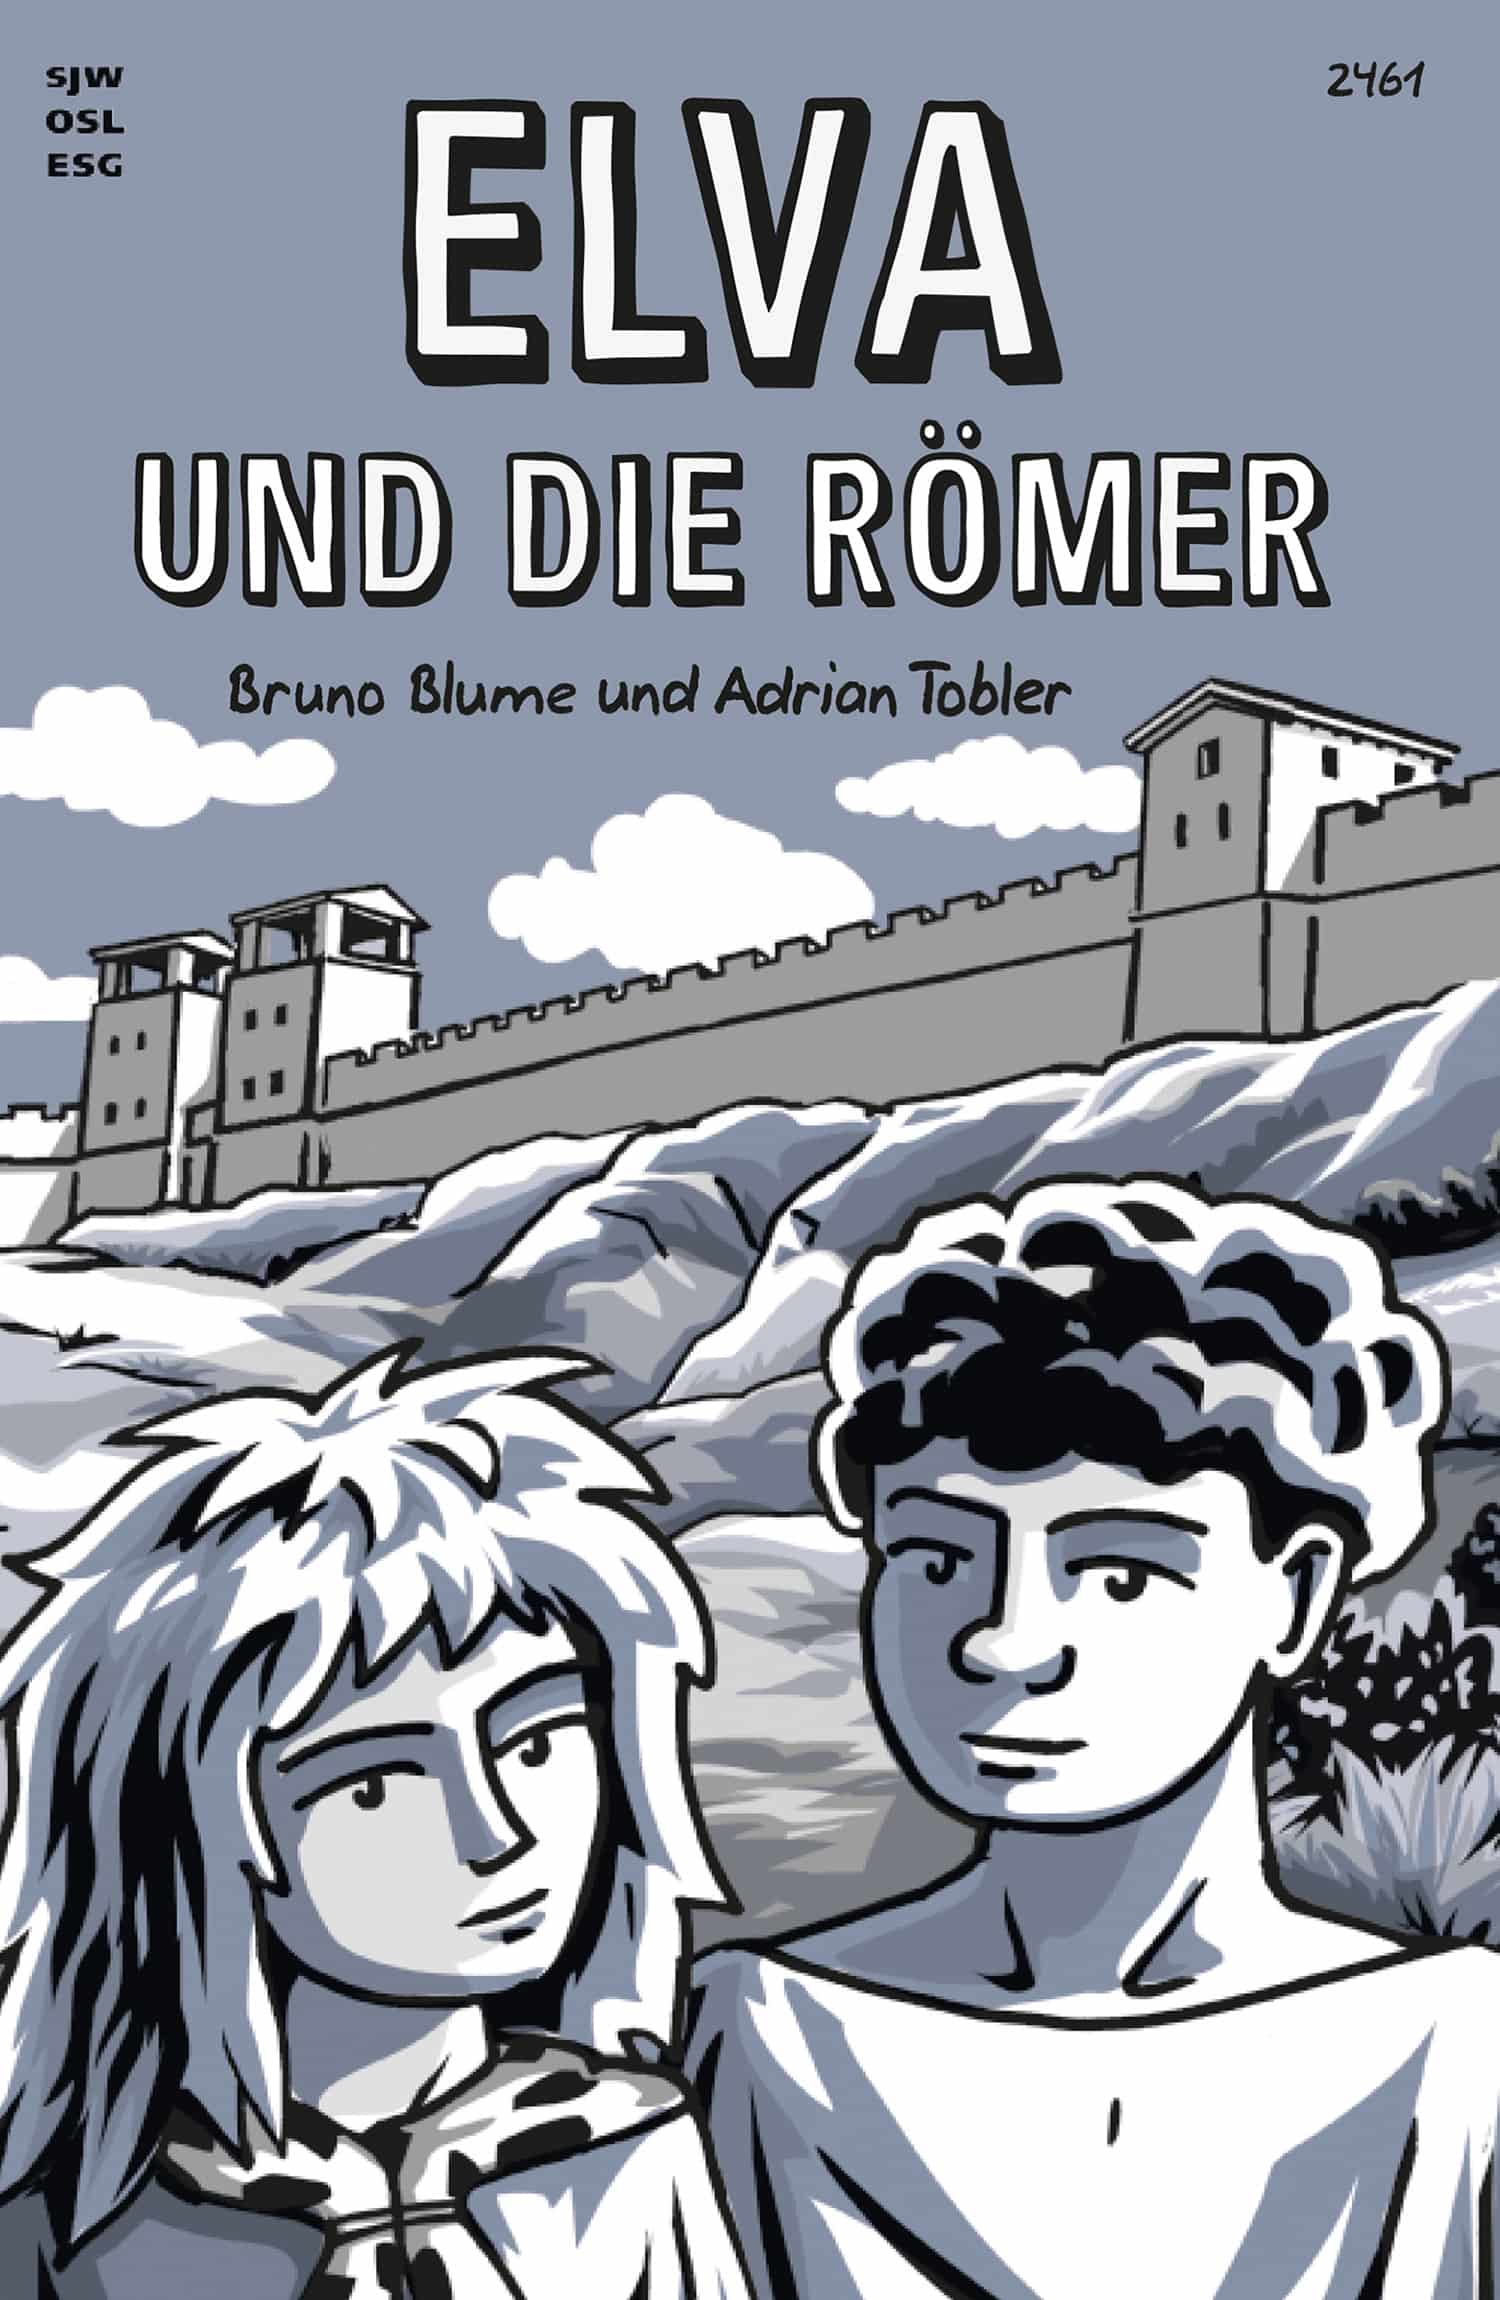 Elva und die Roemer, ein Kinderbuch von Bruno Blume, Illustration von Adrian Tobler, SJW Verlag, Geschichte, Roemer